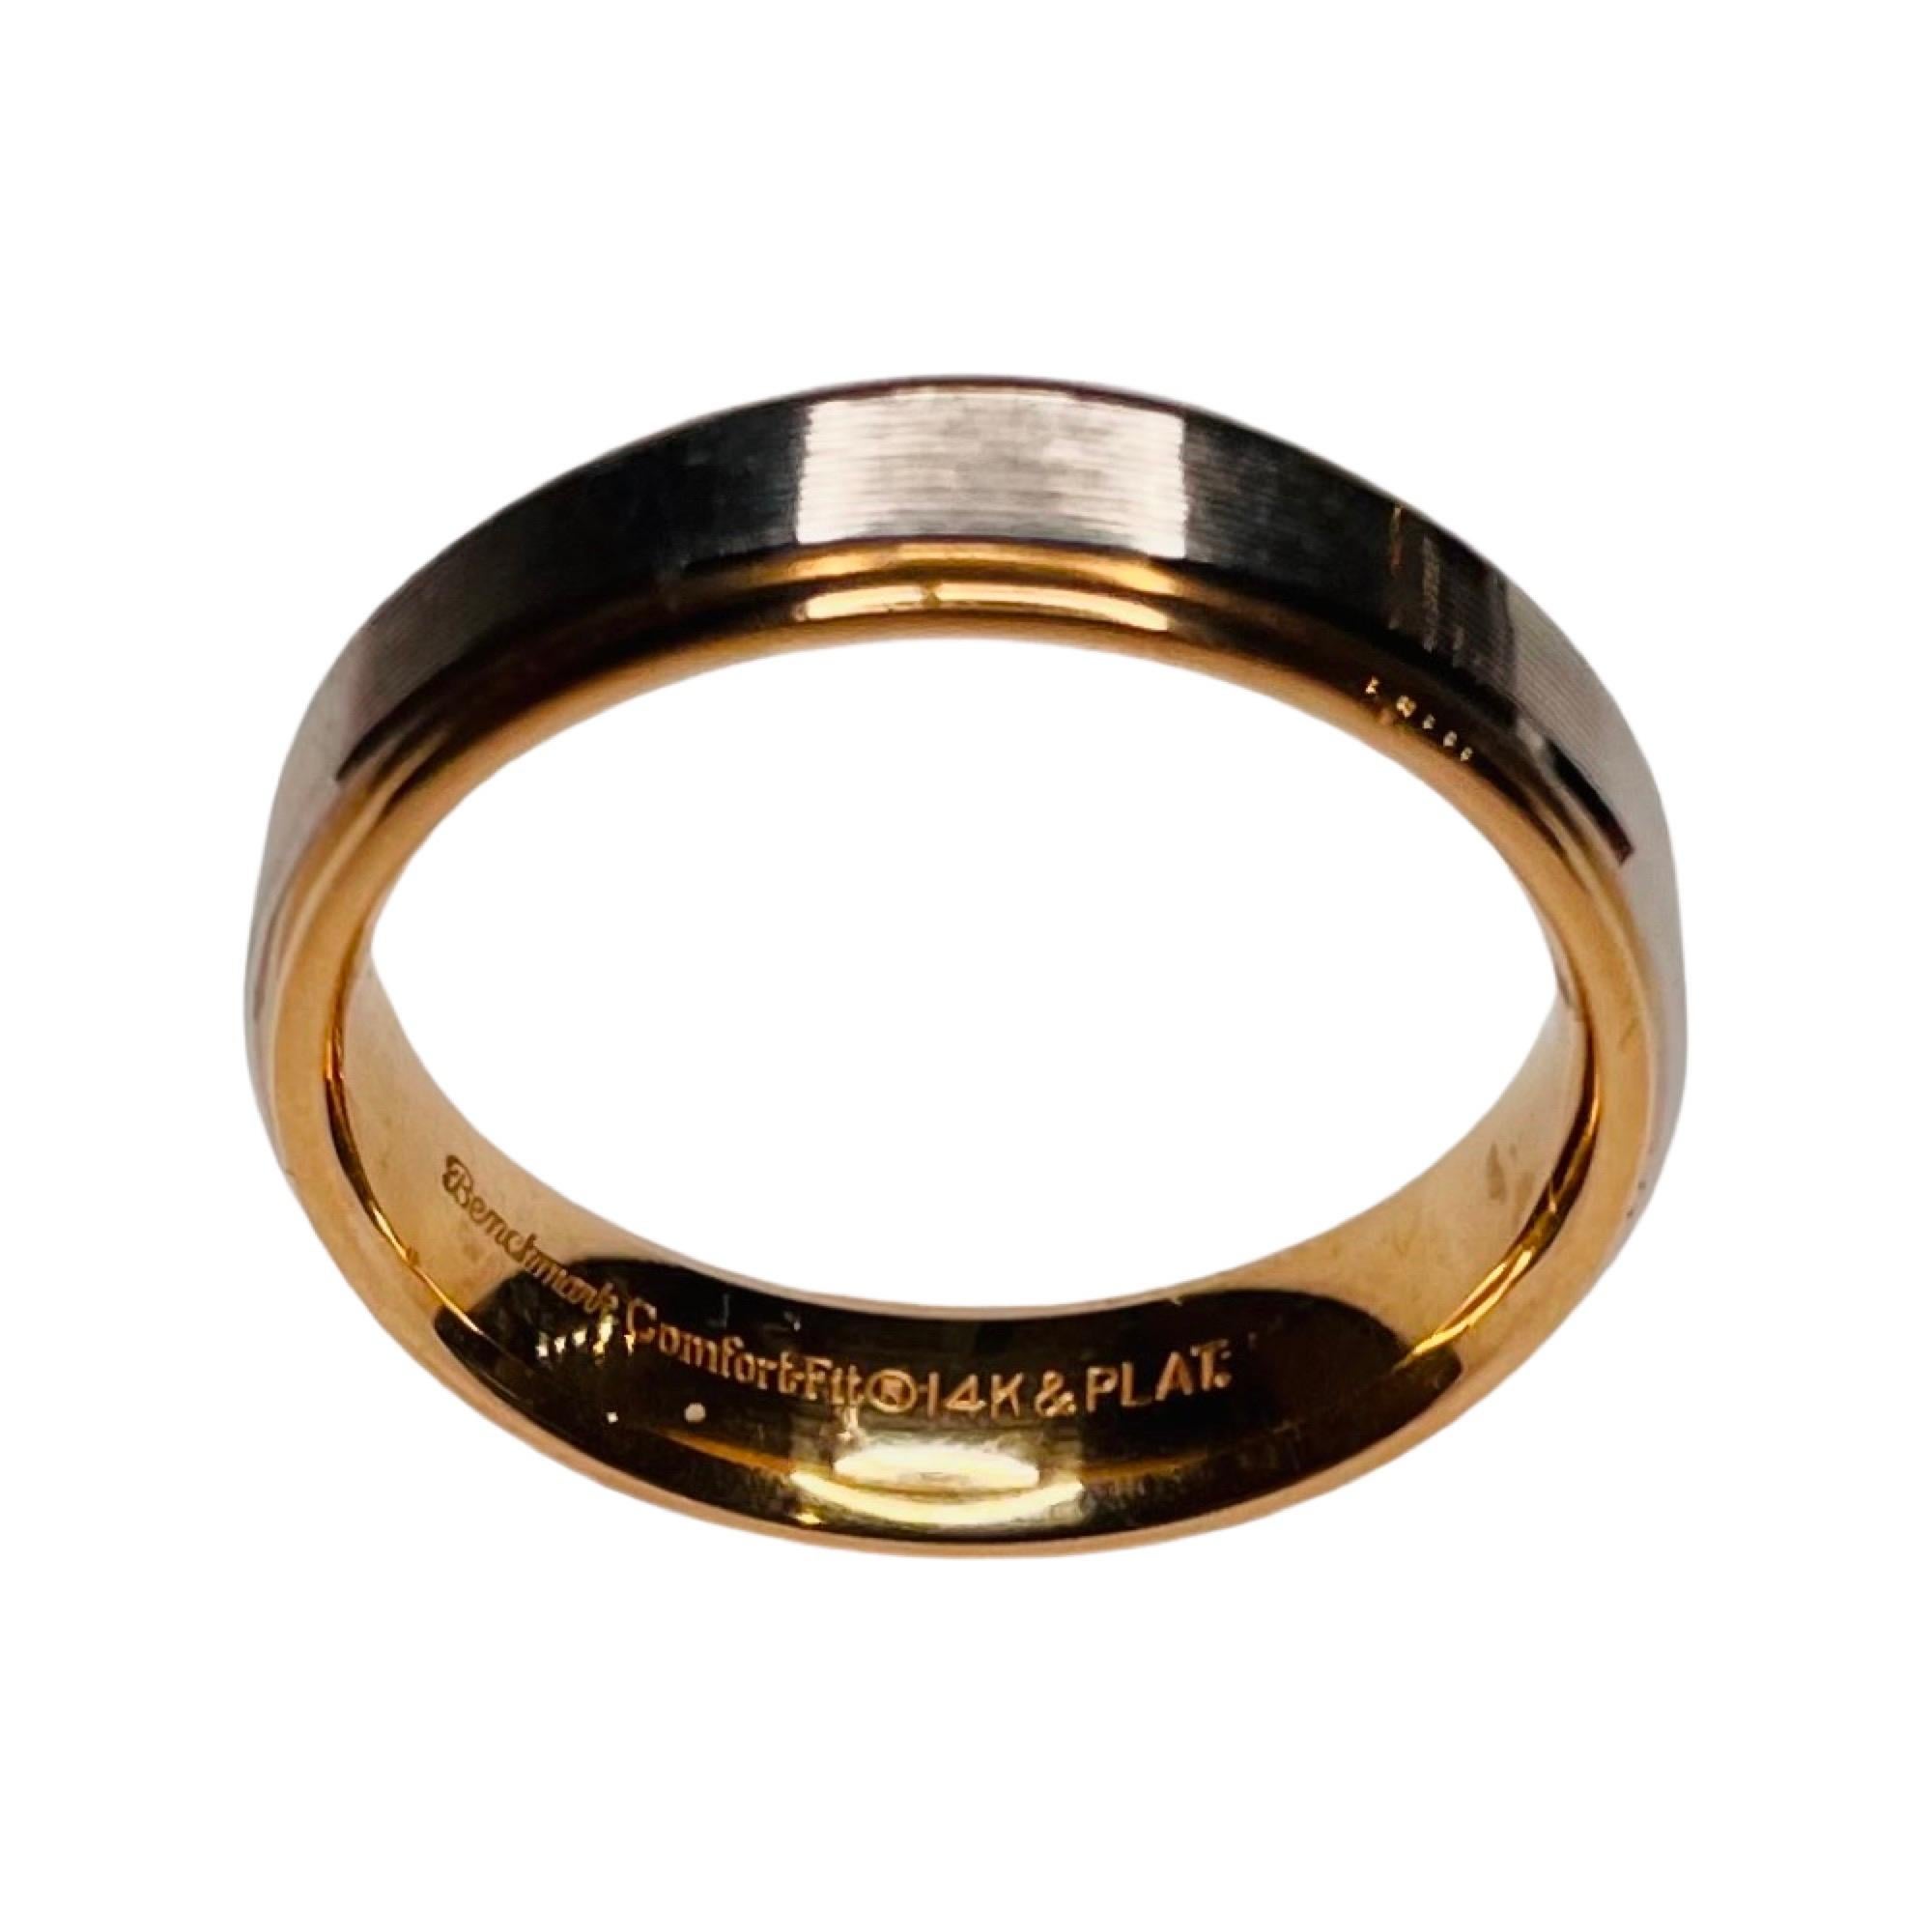 Alliance Benchmark en or jaune 14K et platine. Il s'agit d'un bracelet confort. Il a une largeur de 6,0 mm. Le centre est en platine gravé et l'extérieur de l'anneau est poli. Il s'agit d'un doigt de taille 10 mais nous pouvons l'ajuster moyennant